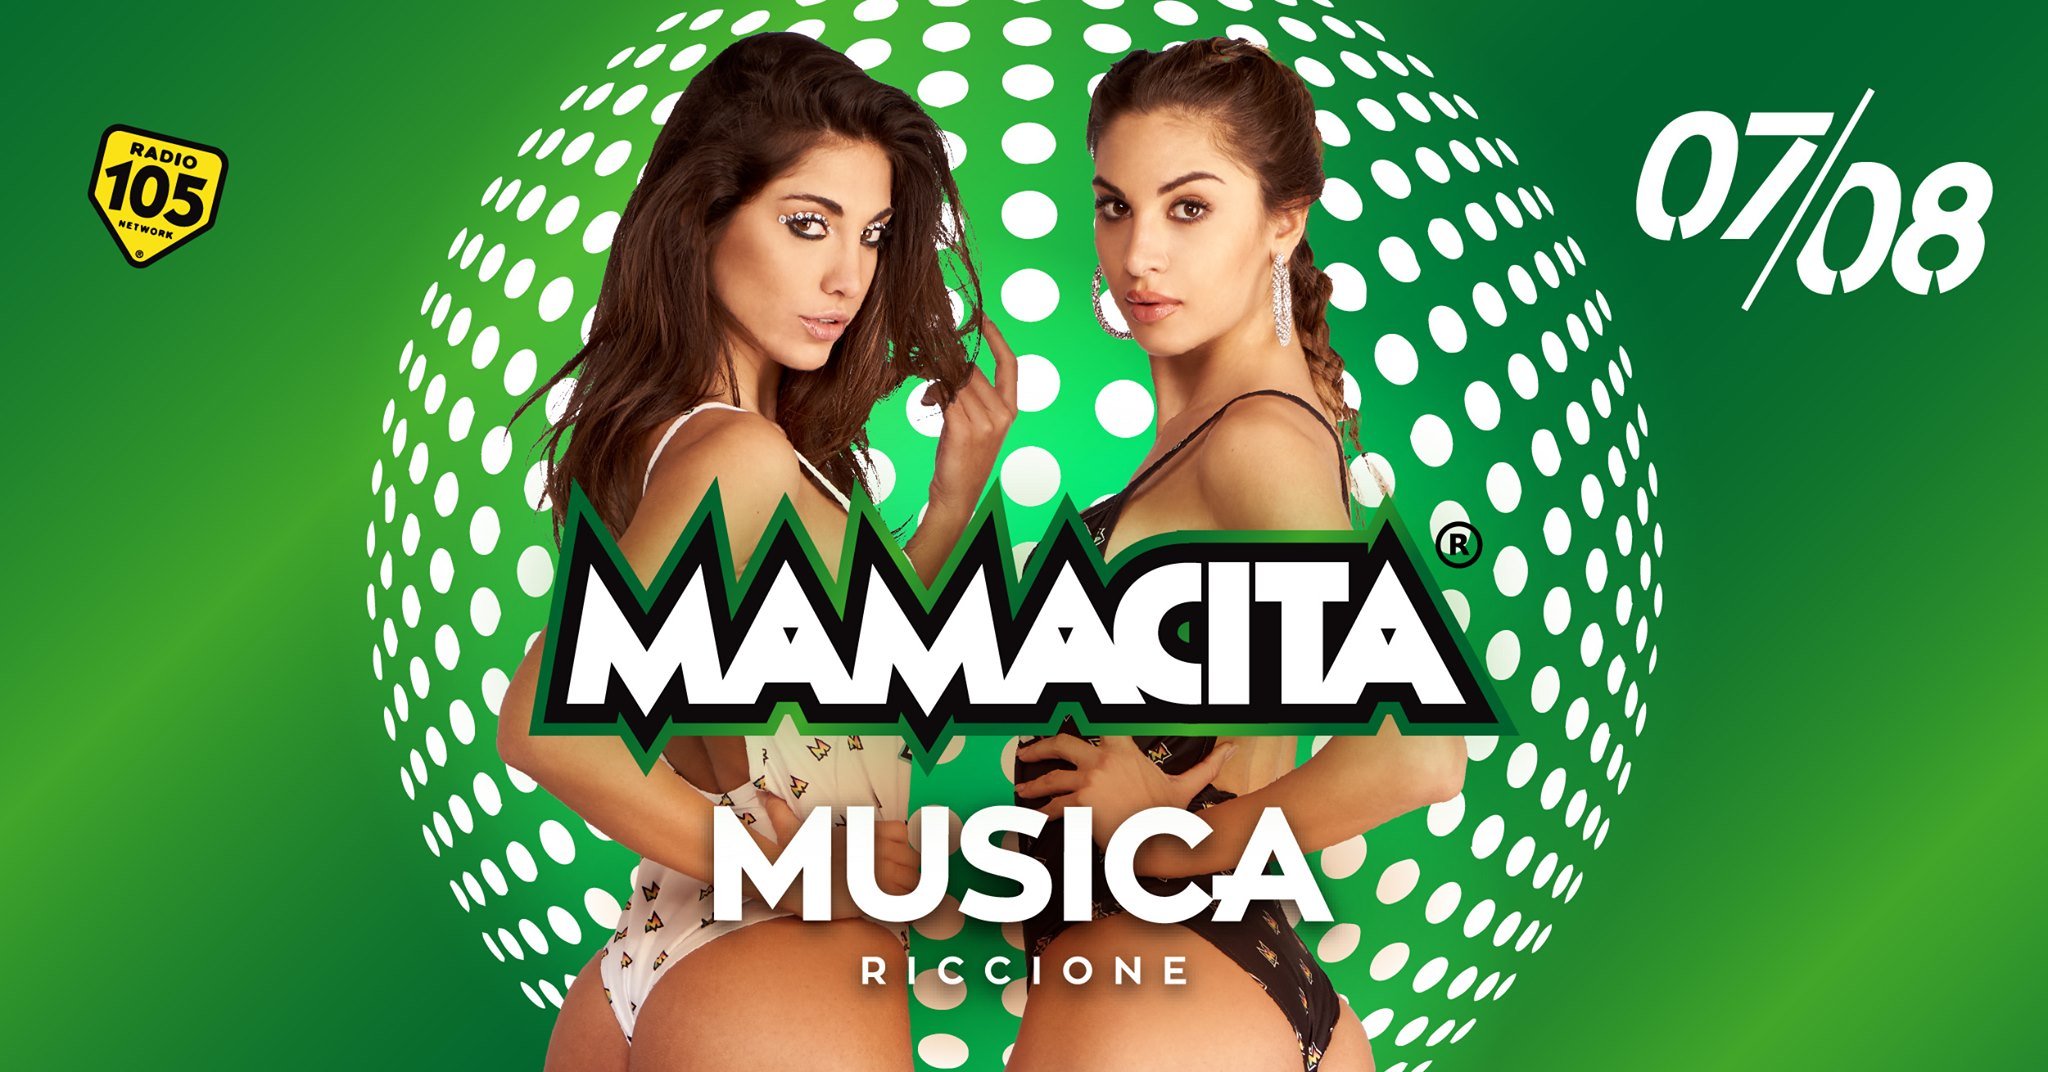 Discoteca Musica Riccione, Mamacita ogni Venerdì